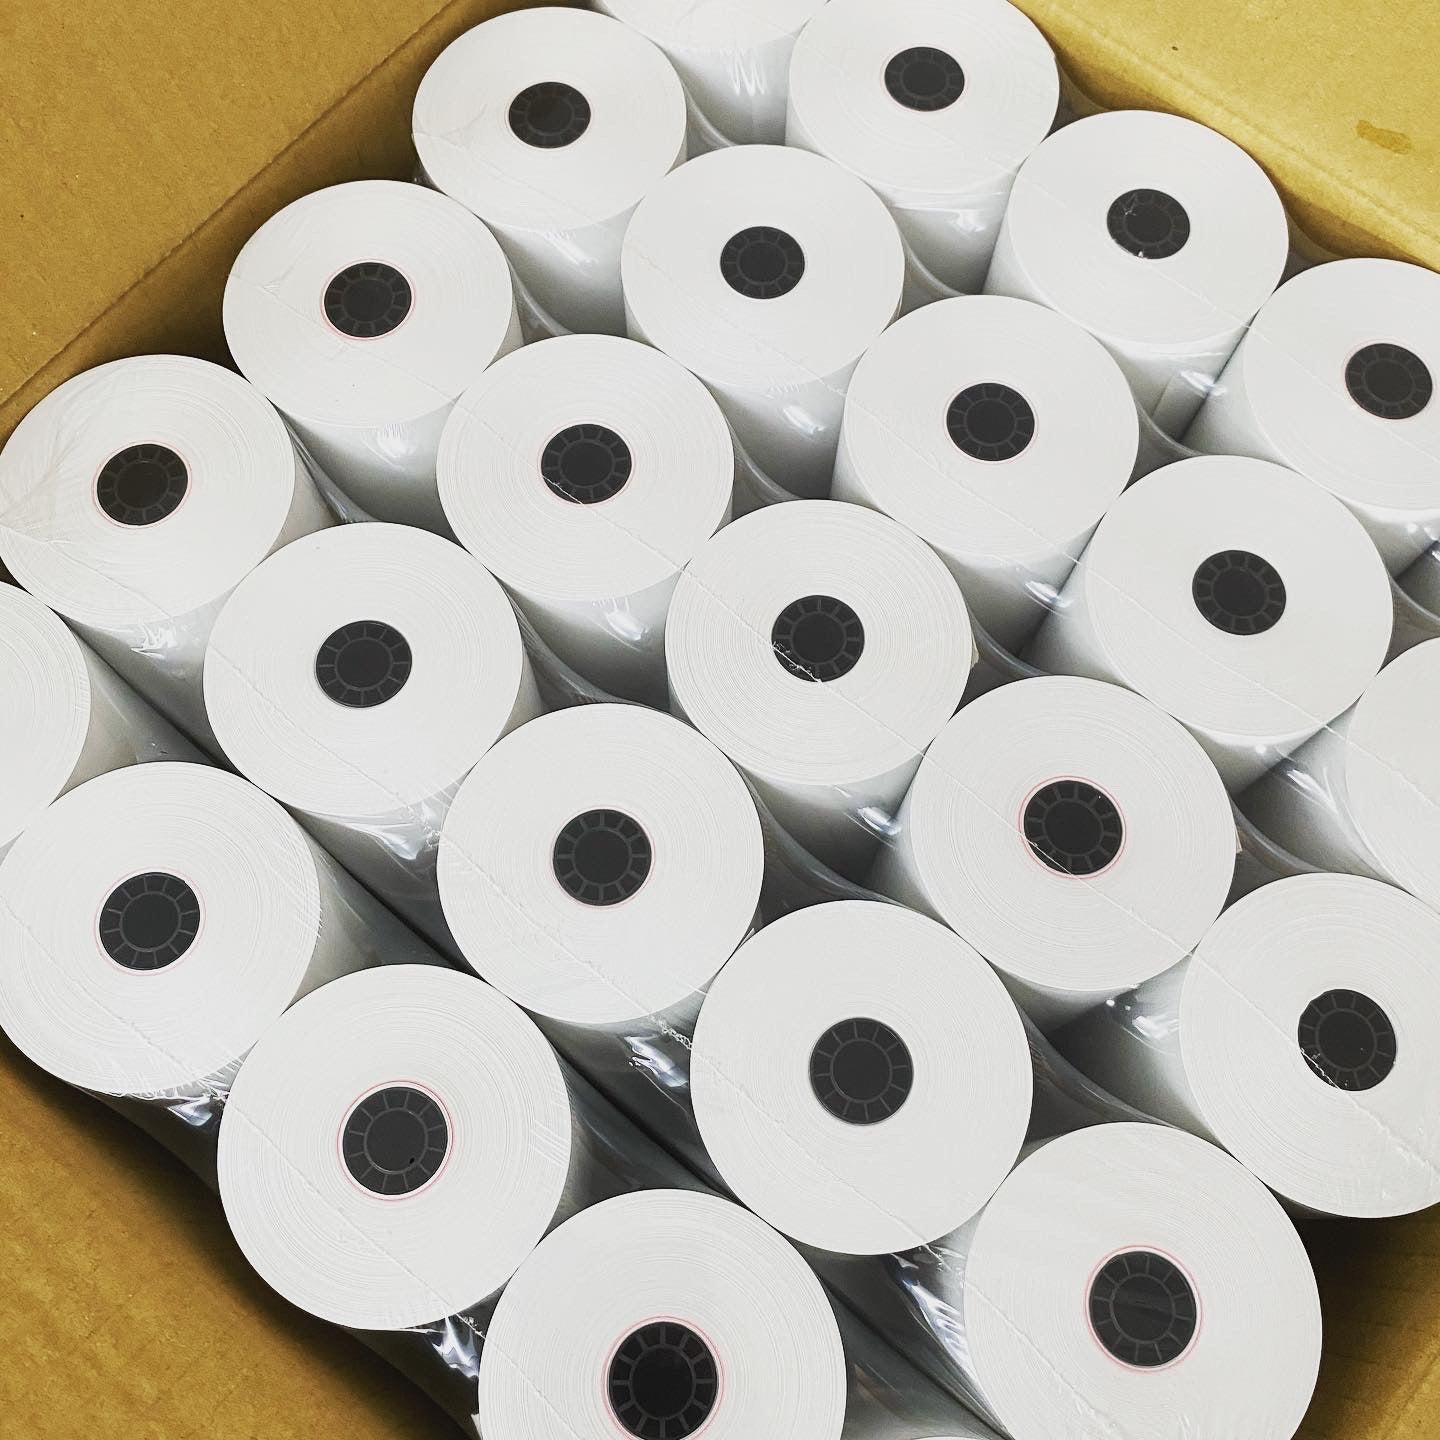 3 1/8 x 230' Thermal Receipt Paper Rolls (50 Rolls)